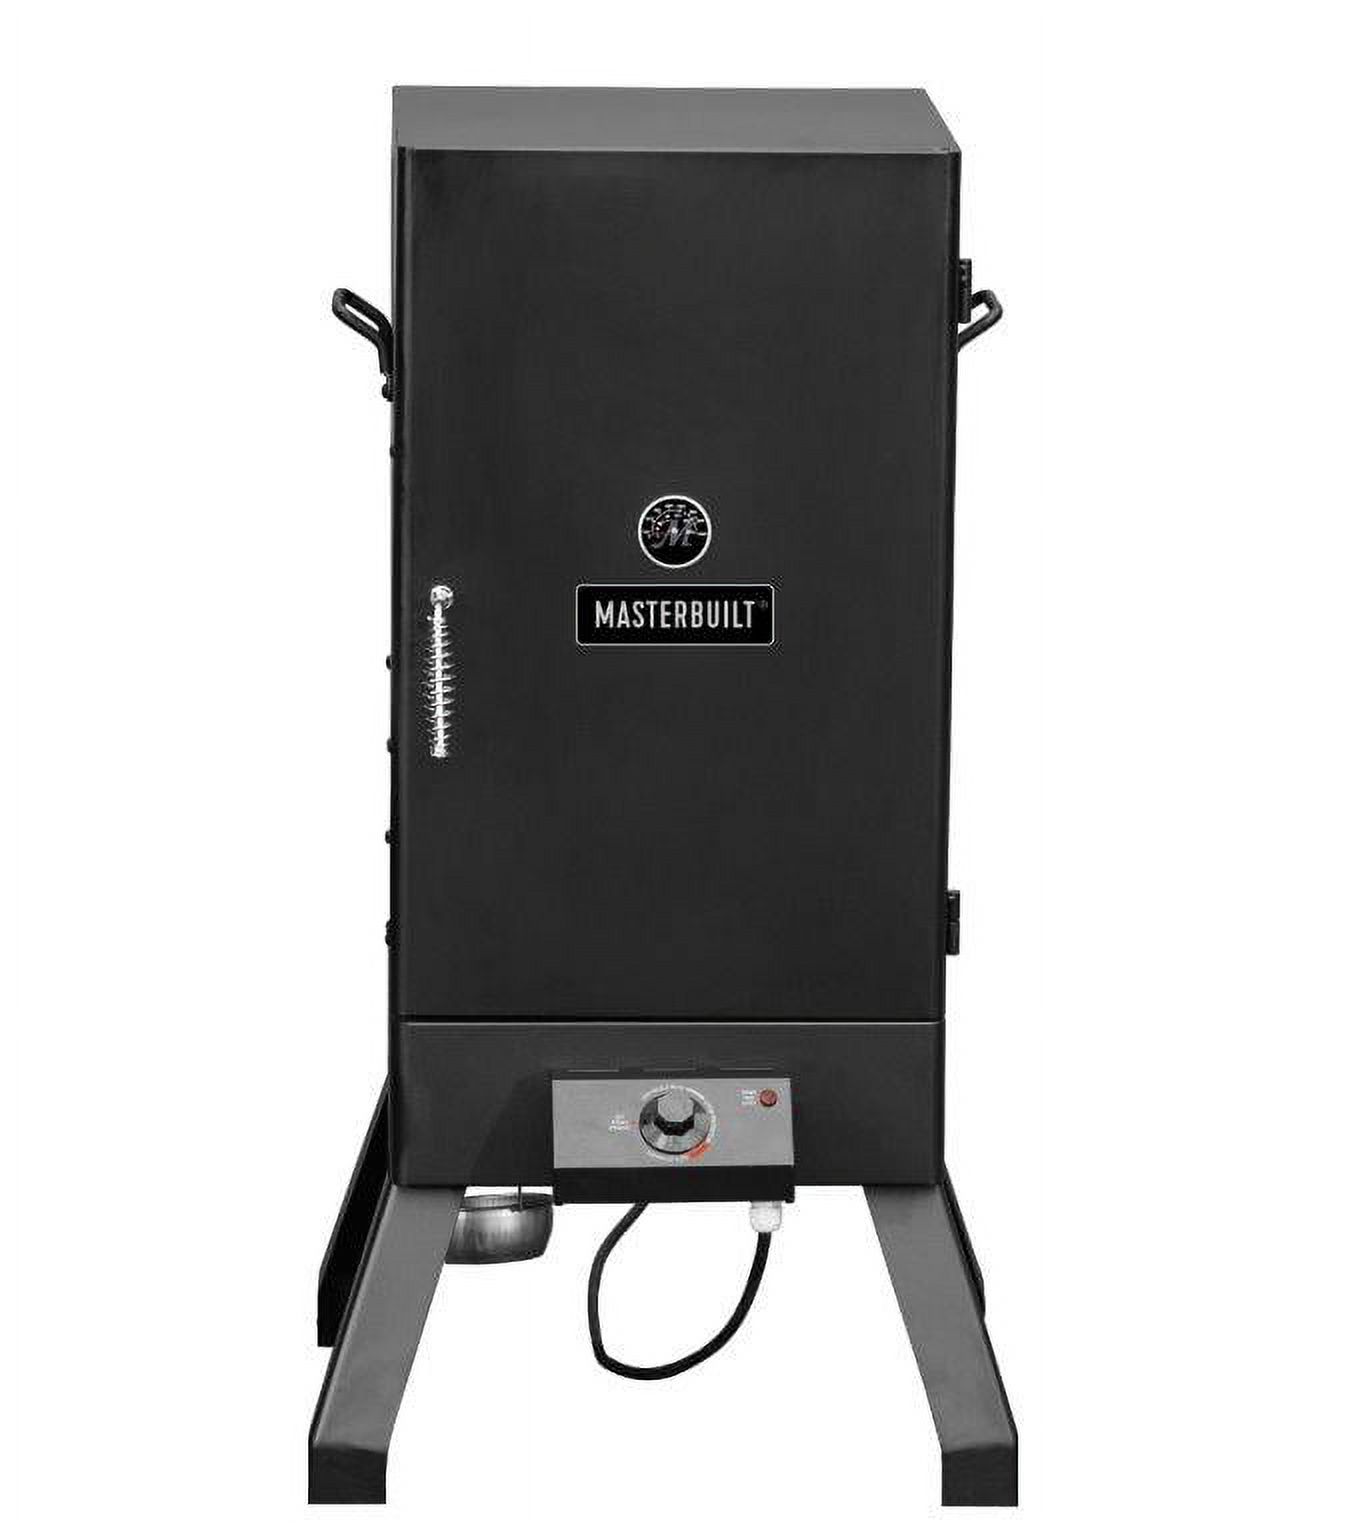 Masterbuilt Analog Electric Smoker in Black - image 1 of 6